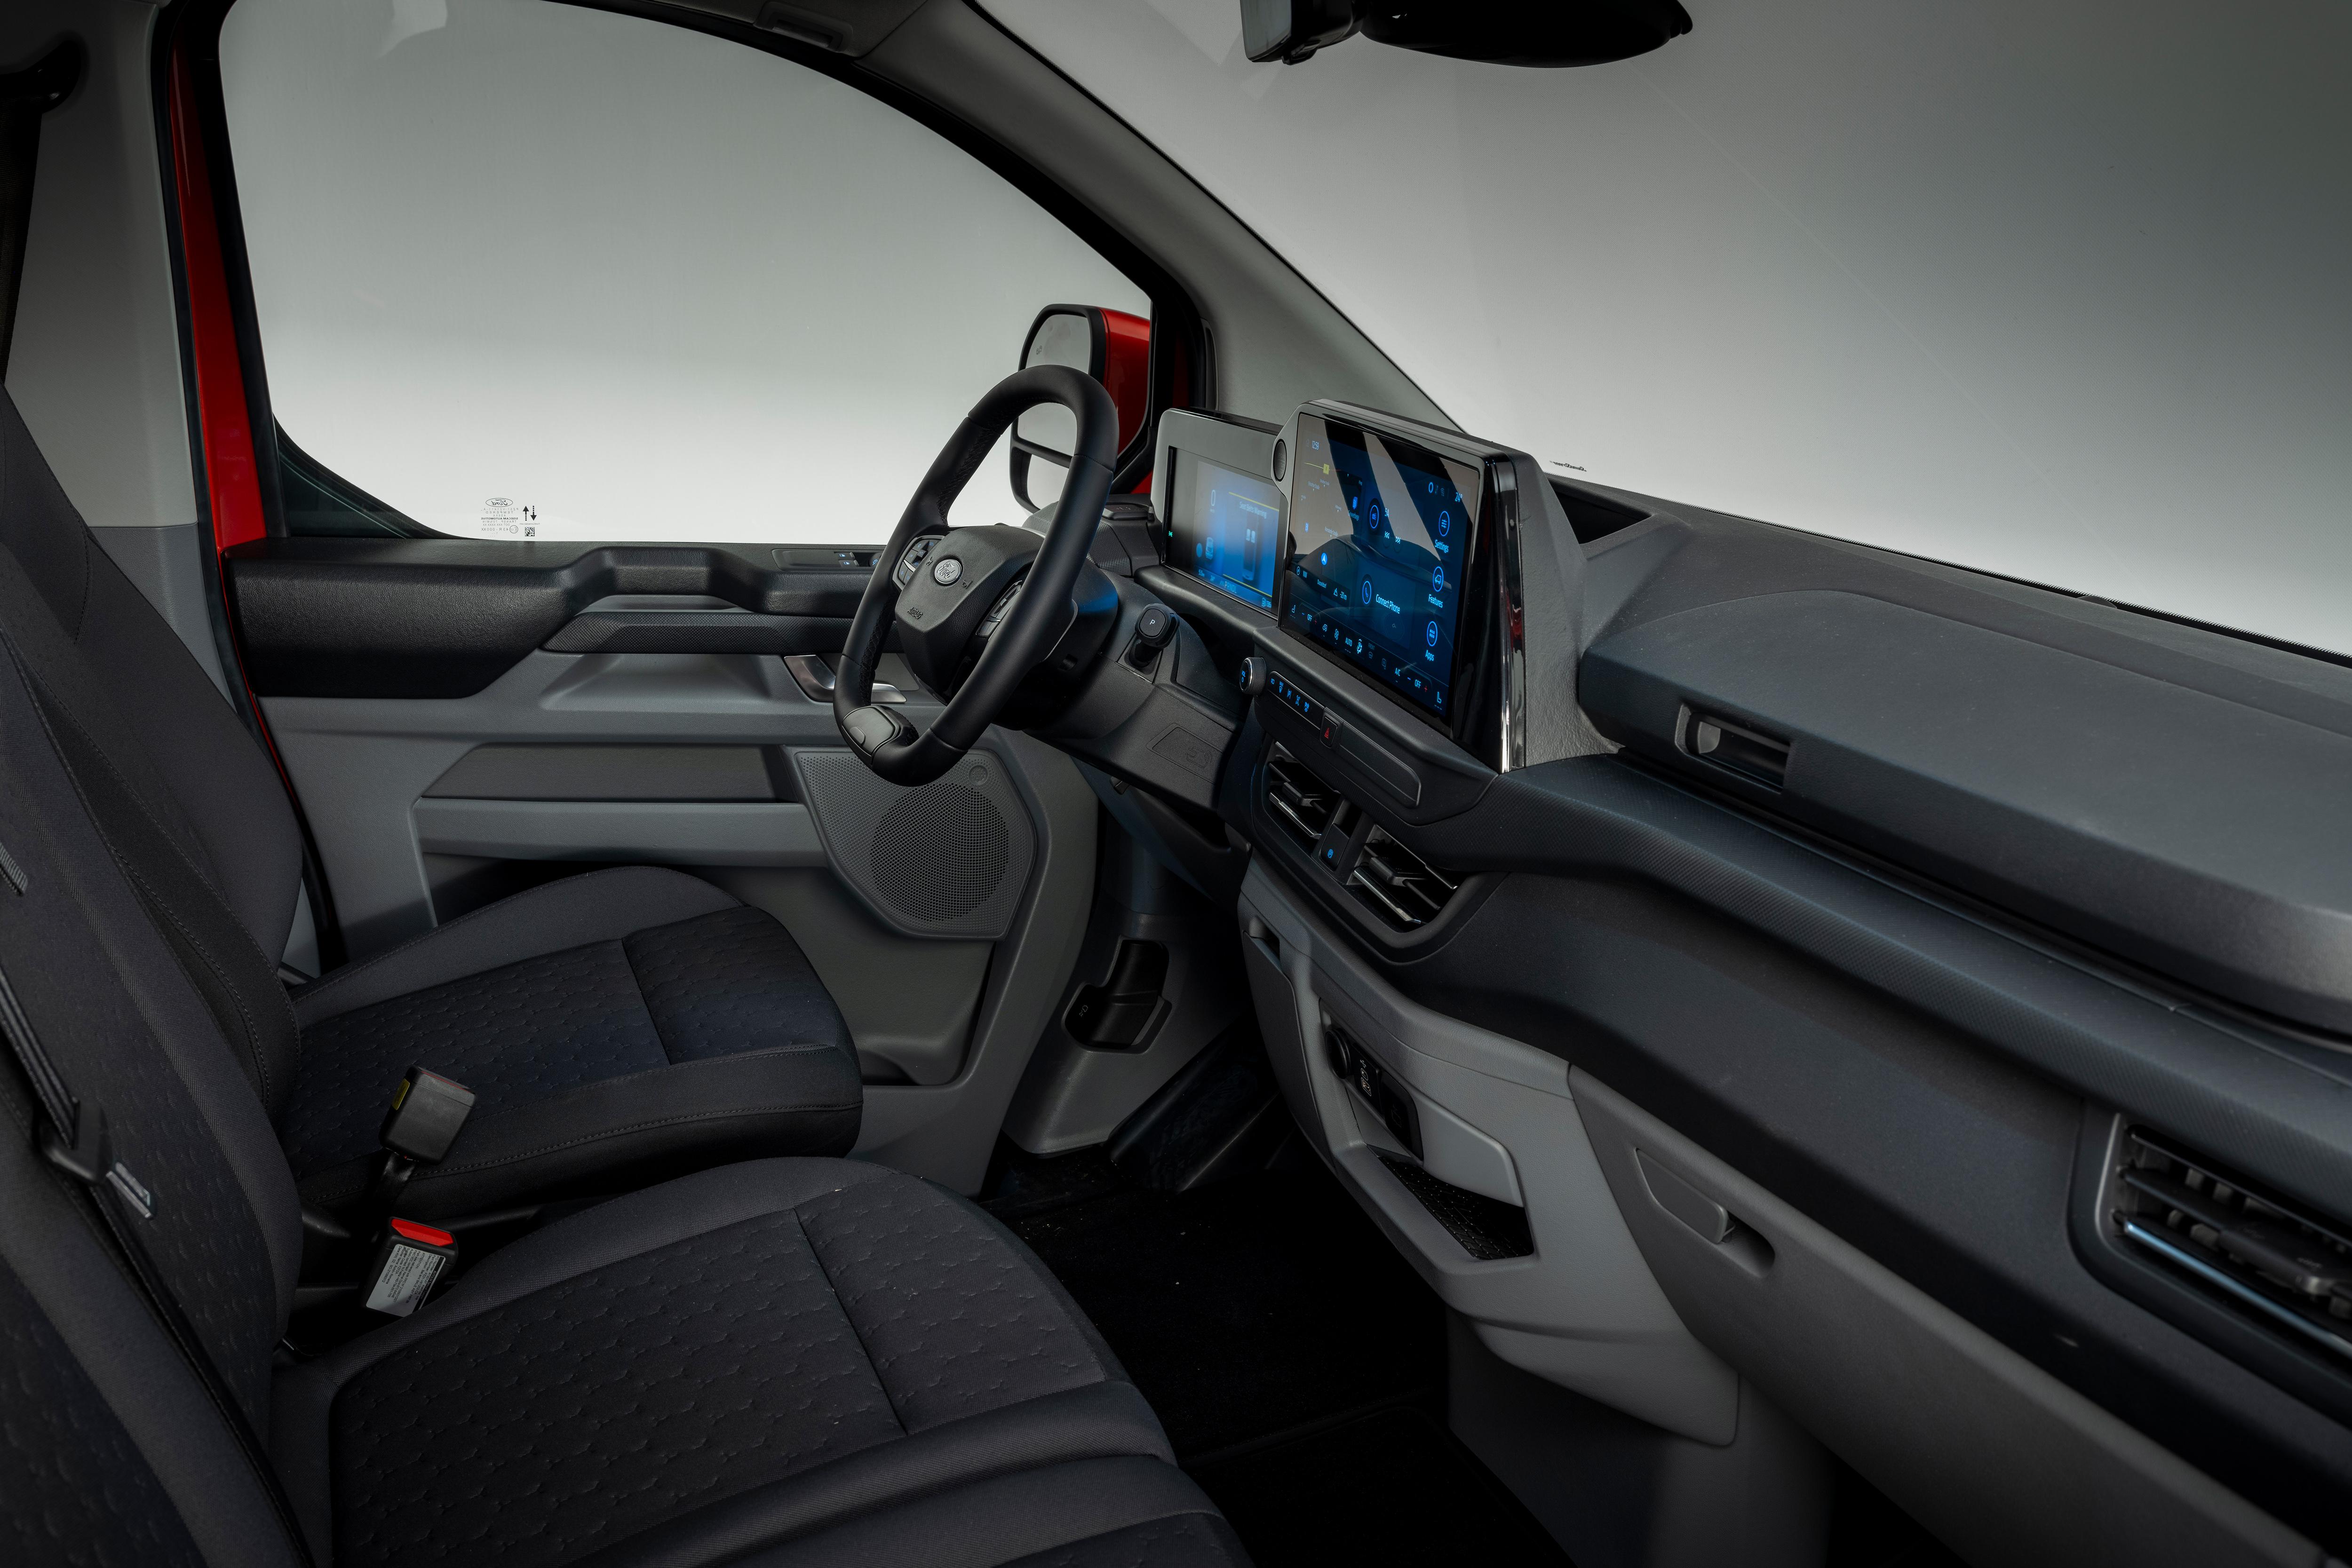 2024 Ford Transit Custom diesel van revealed with a steering wheel